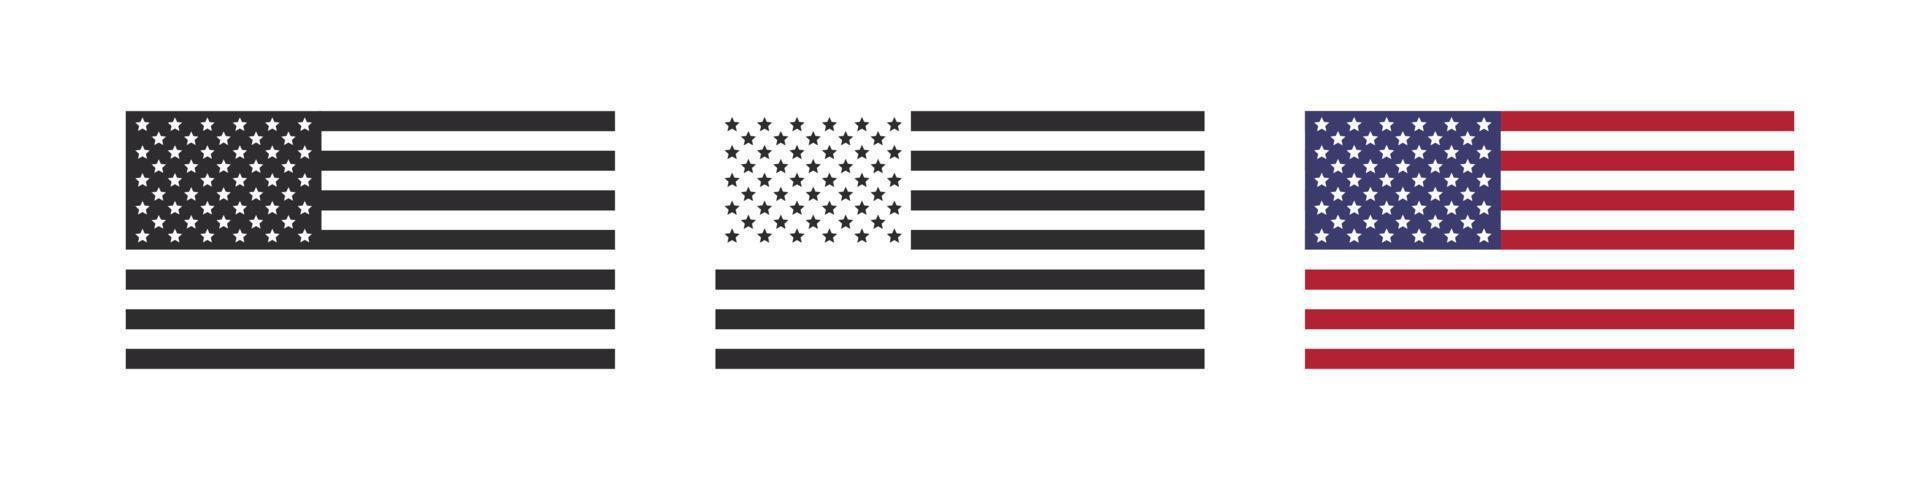 Flaggen der Vereinigten Staaten von Amerika. Flaggensymbole. Vektor-Illustration vektor